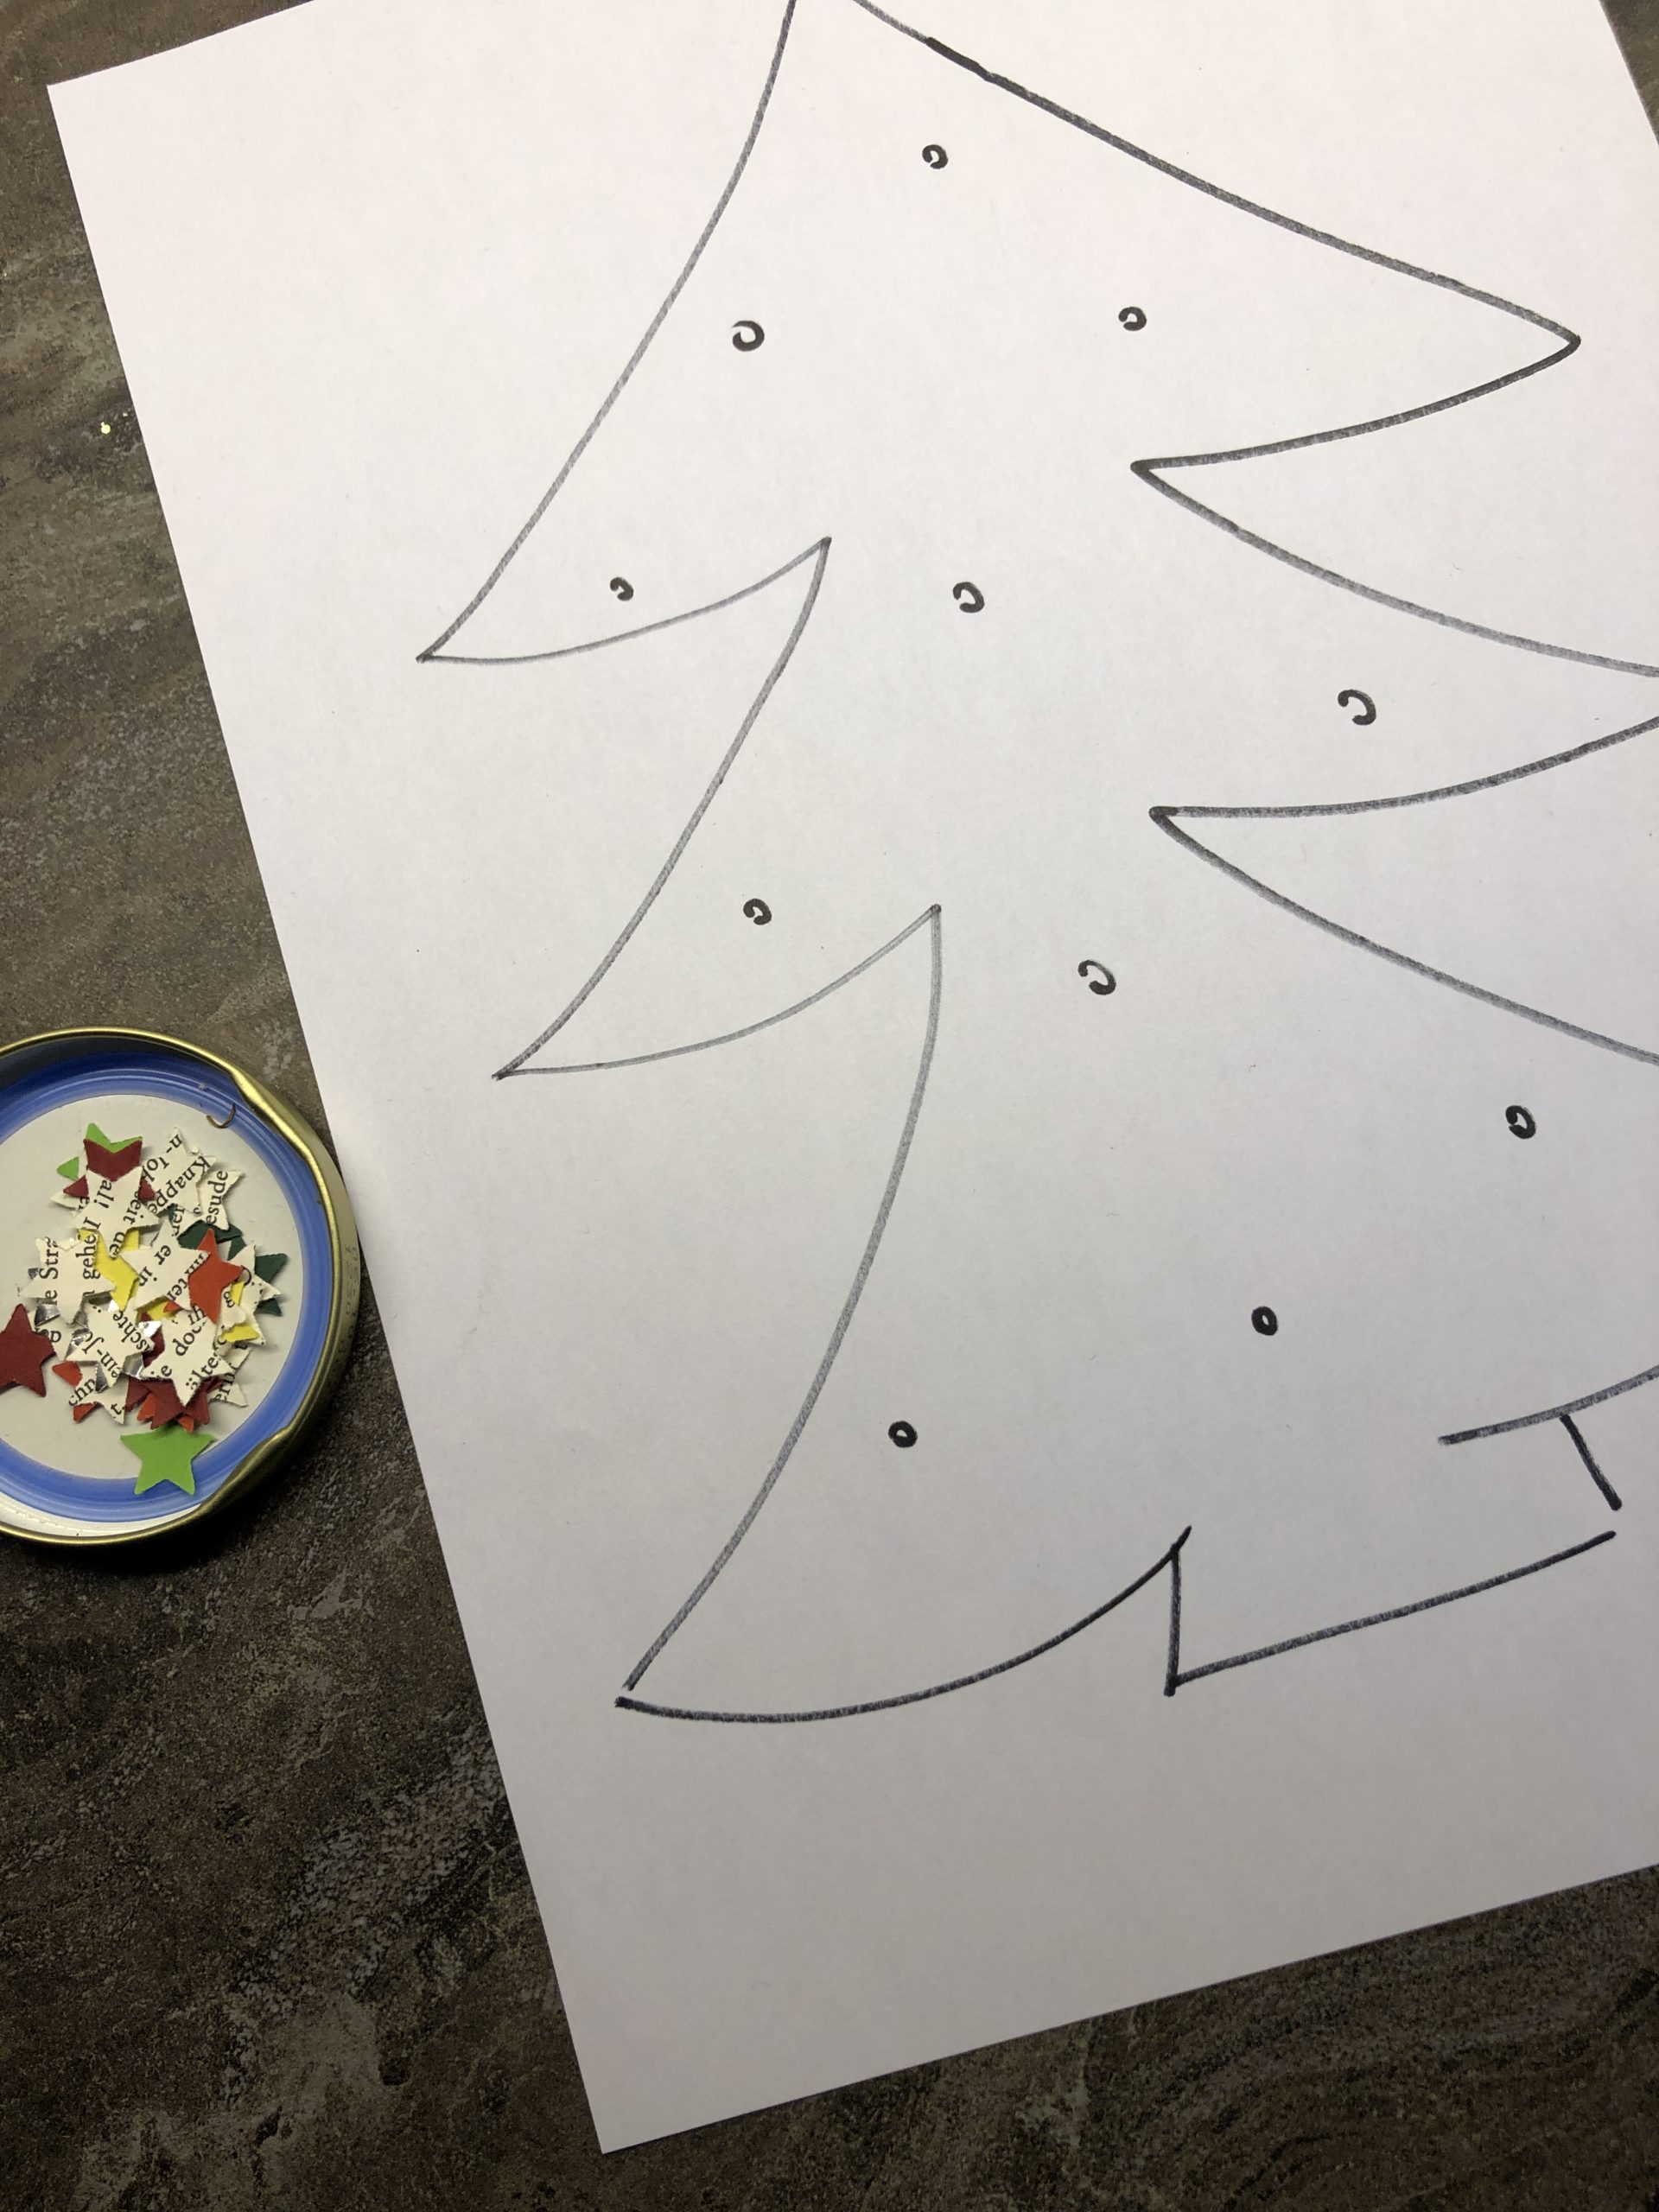 Bild zum Schritt 9 für das Bastel- und DIY-Abenteuer für Kinder: 'Ihr könnt den Baum auch bekleben. Die kleinen Punkte geben...'